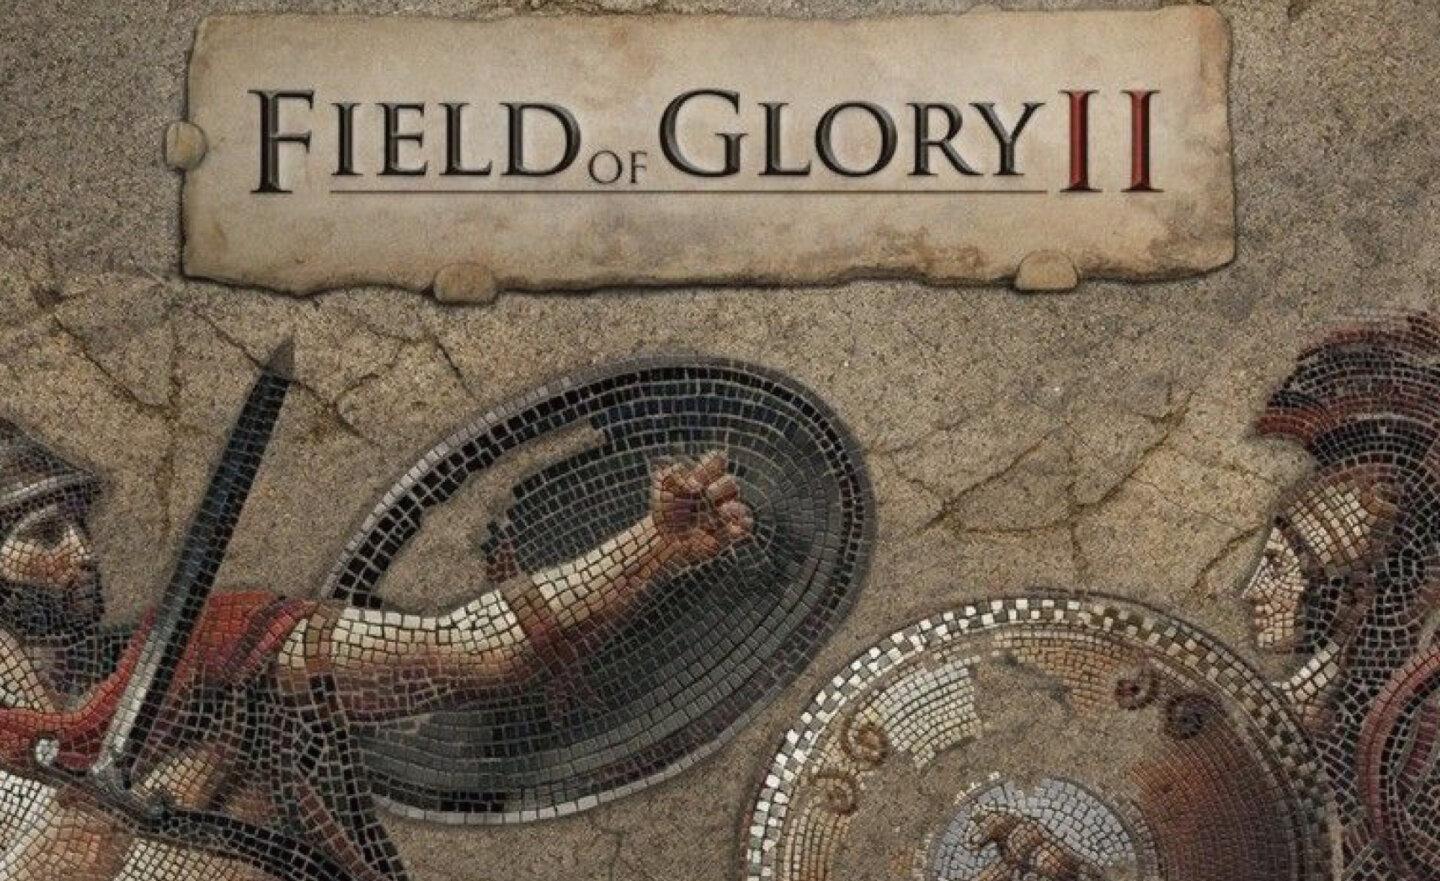 【限時免費】Steam 放送《Field of Glory II 榮耀之地 2》，6 月 9 日上午 12:00 前永久保留